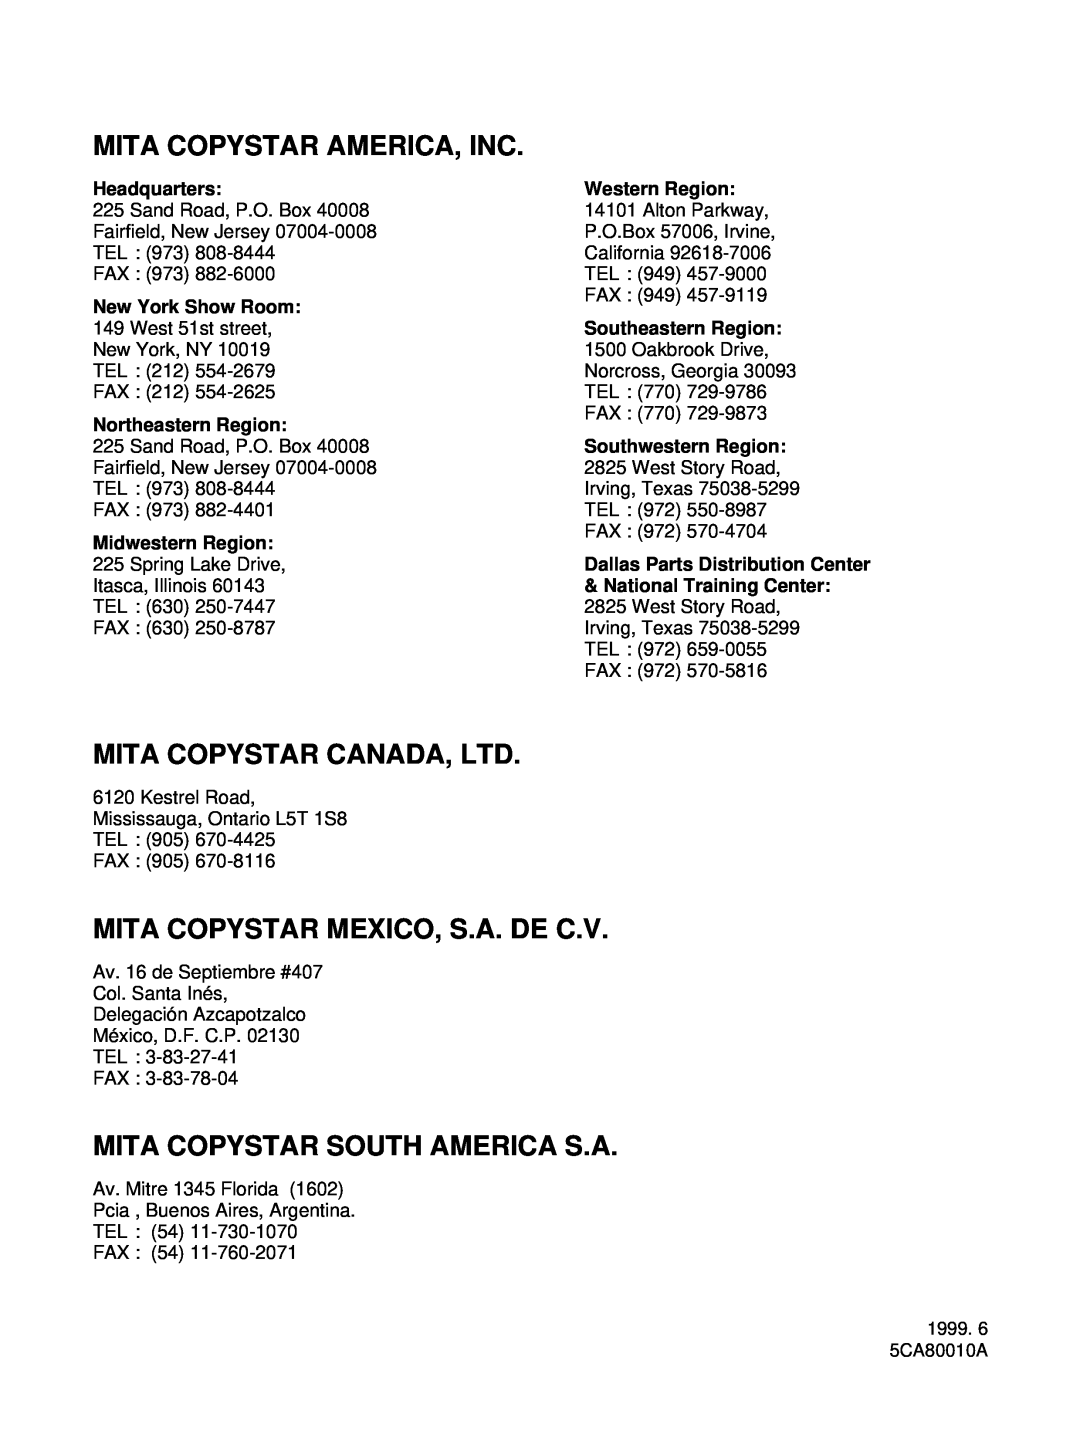 HP Ci 1100 Mita Copystar America, Inc, Mita Copystar Mexico, S.A. De C.V, Mita Copystar South America S.A, Headquarters 